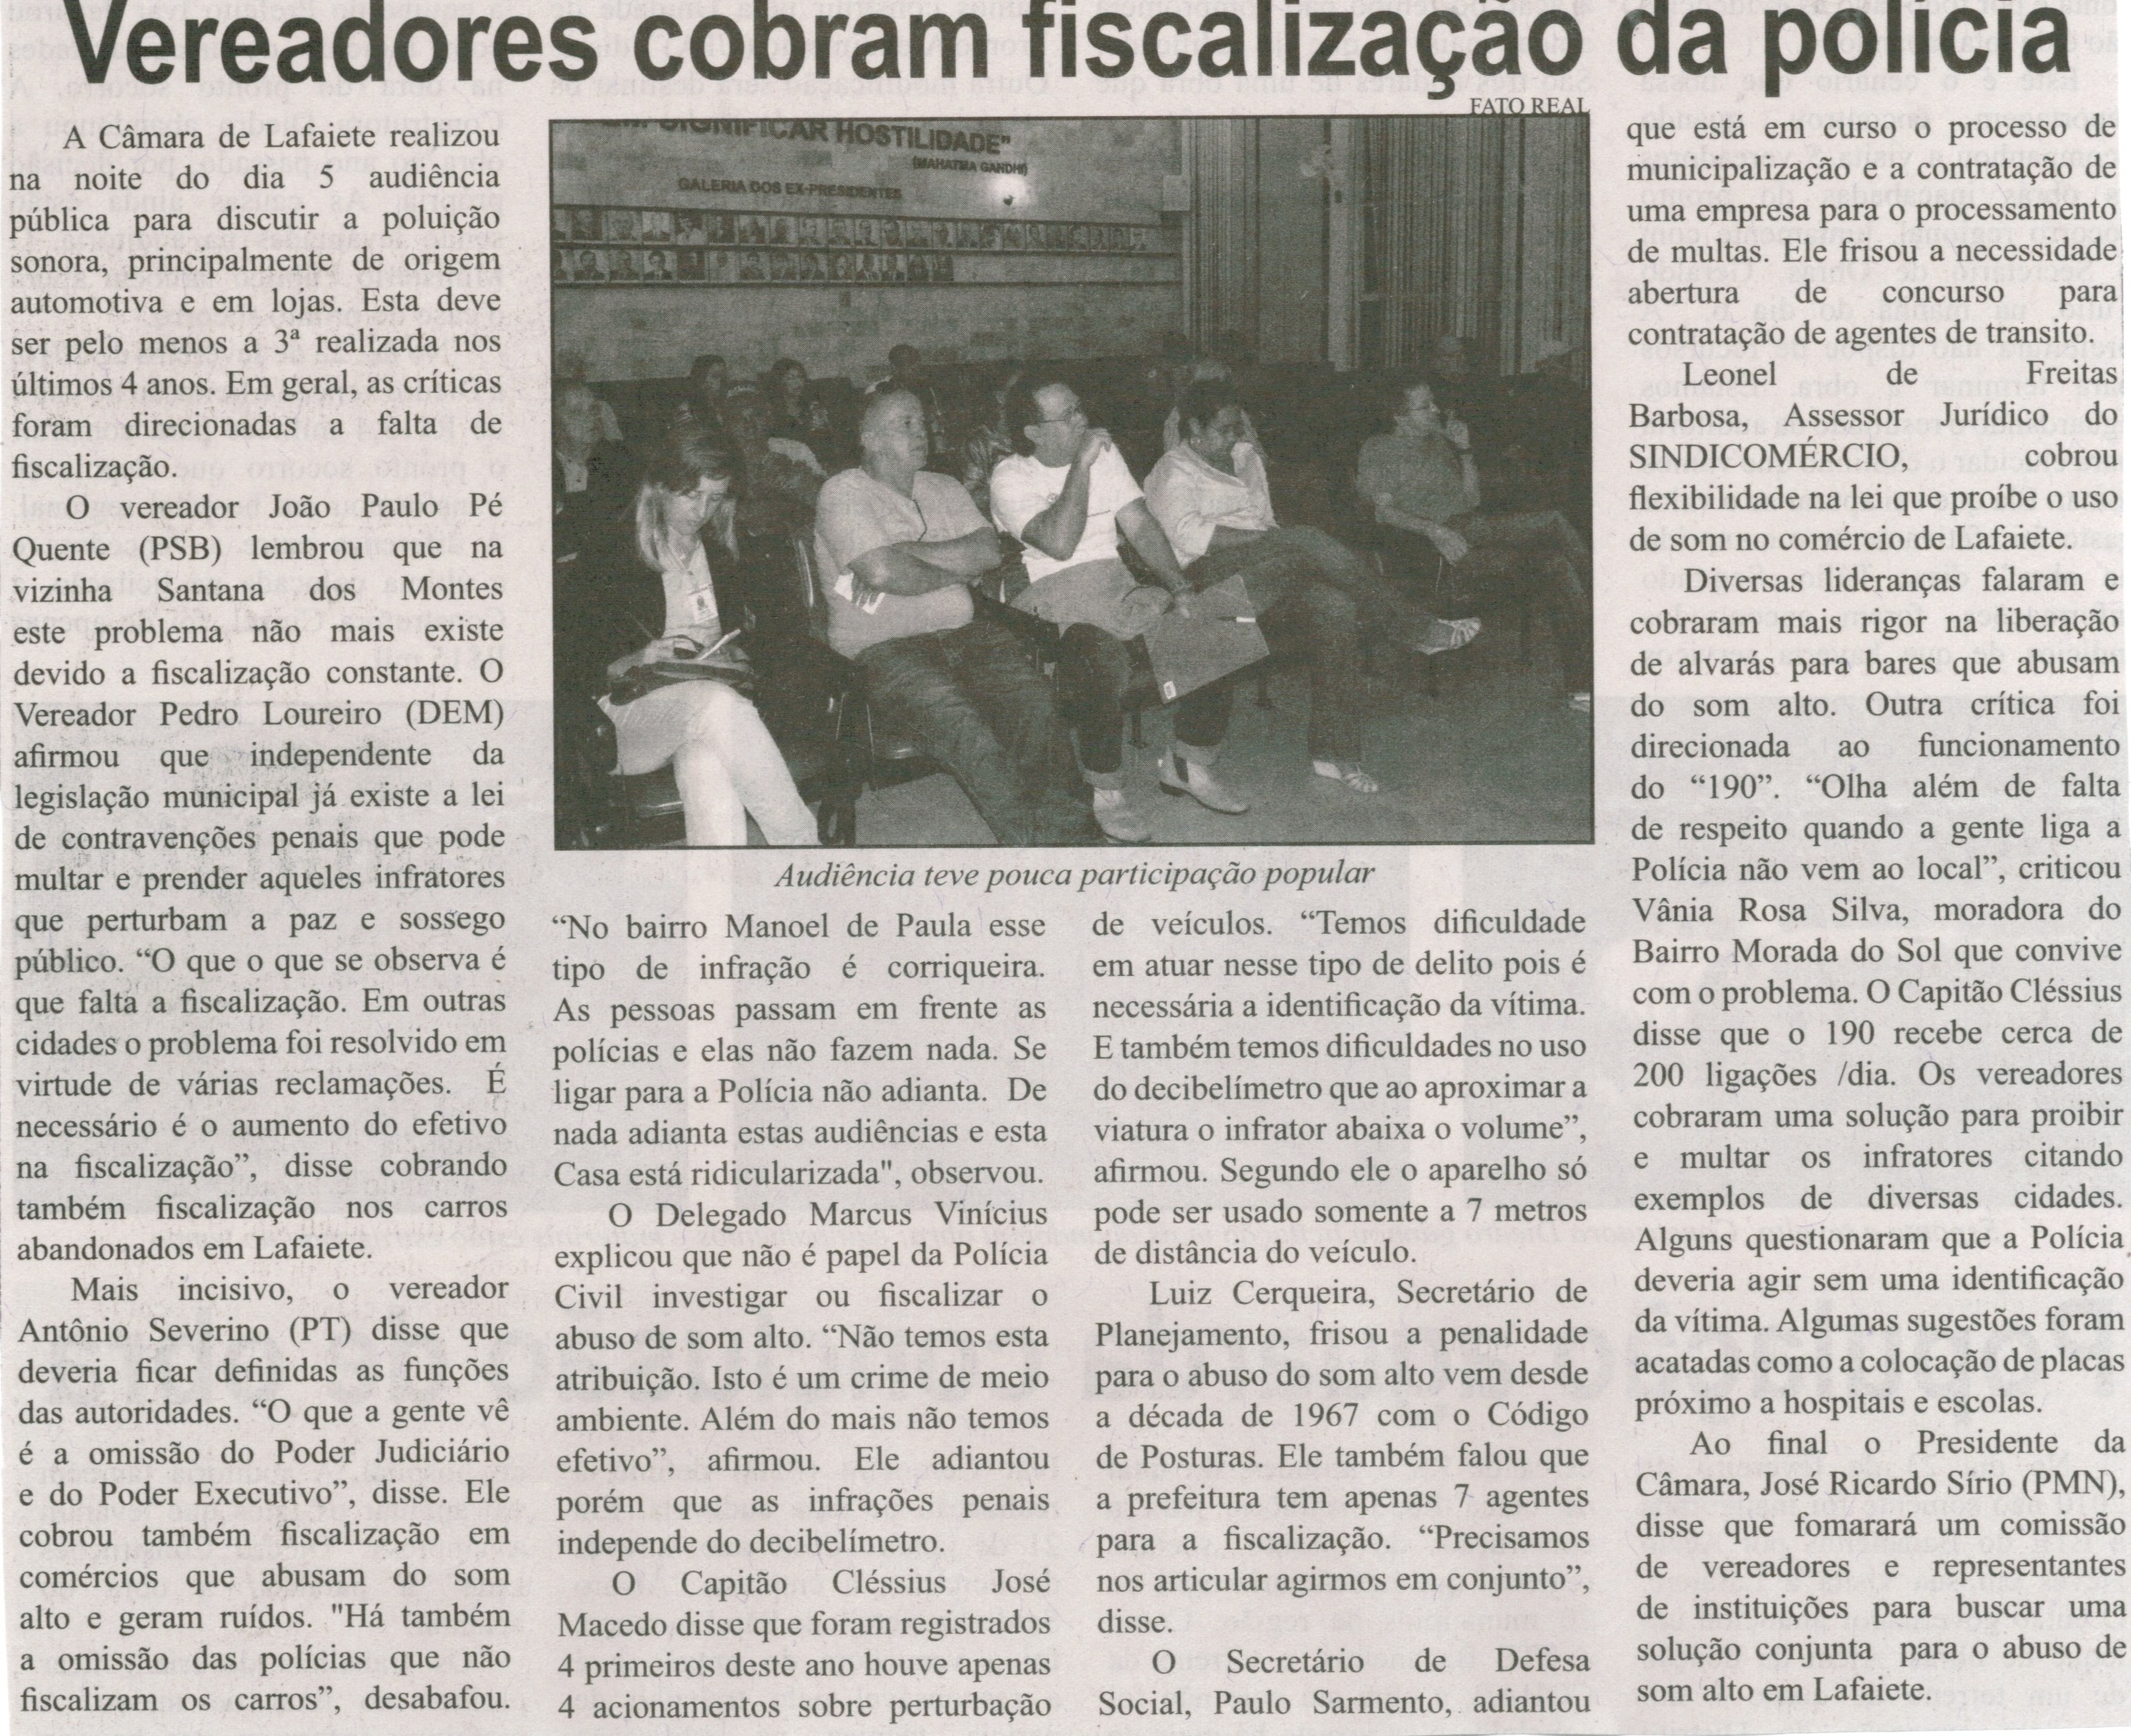 Vereadores cobram fiscalização da polícia. Correio de Minas, Conselheiro Lafaiete, 10 mai. 2014, p. 4.